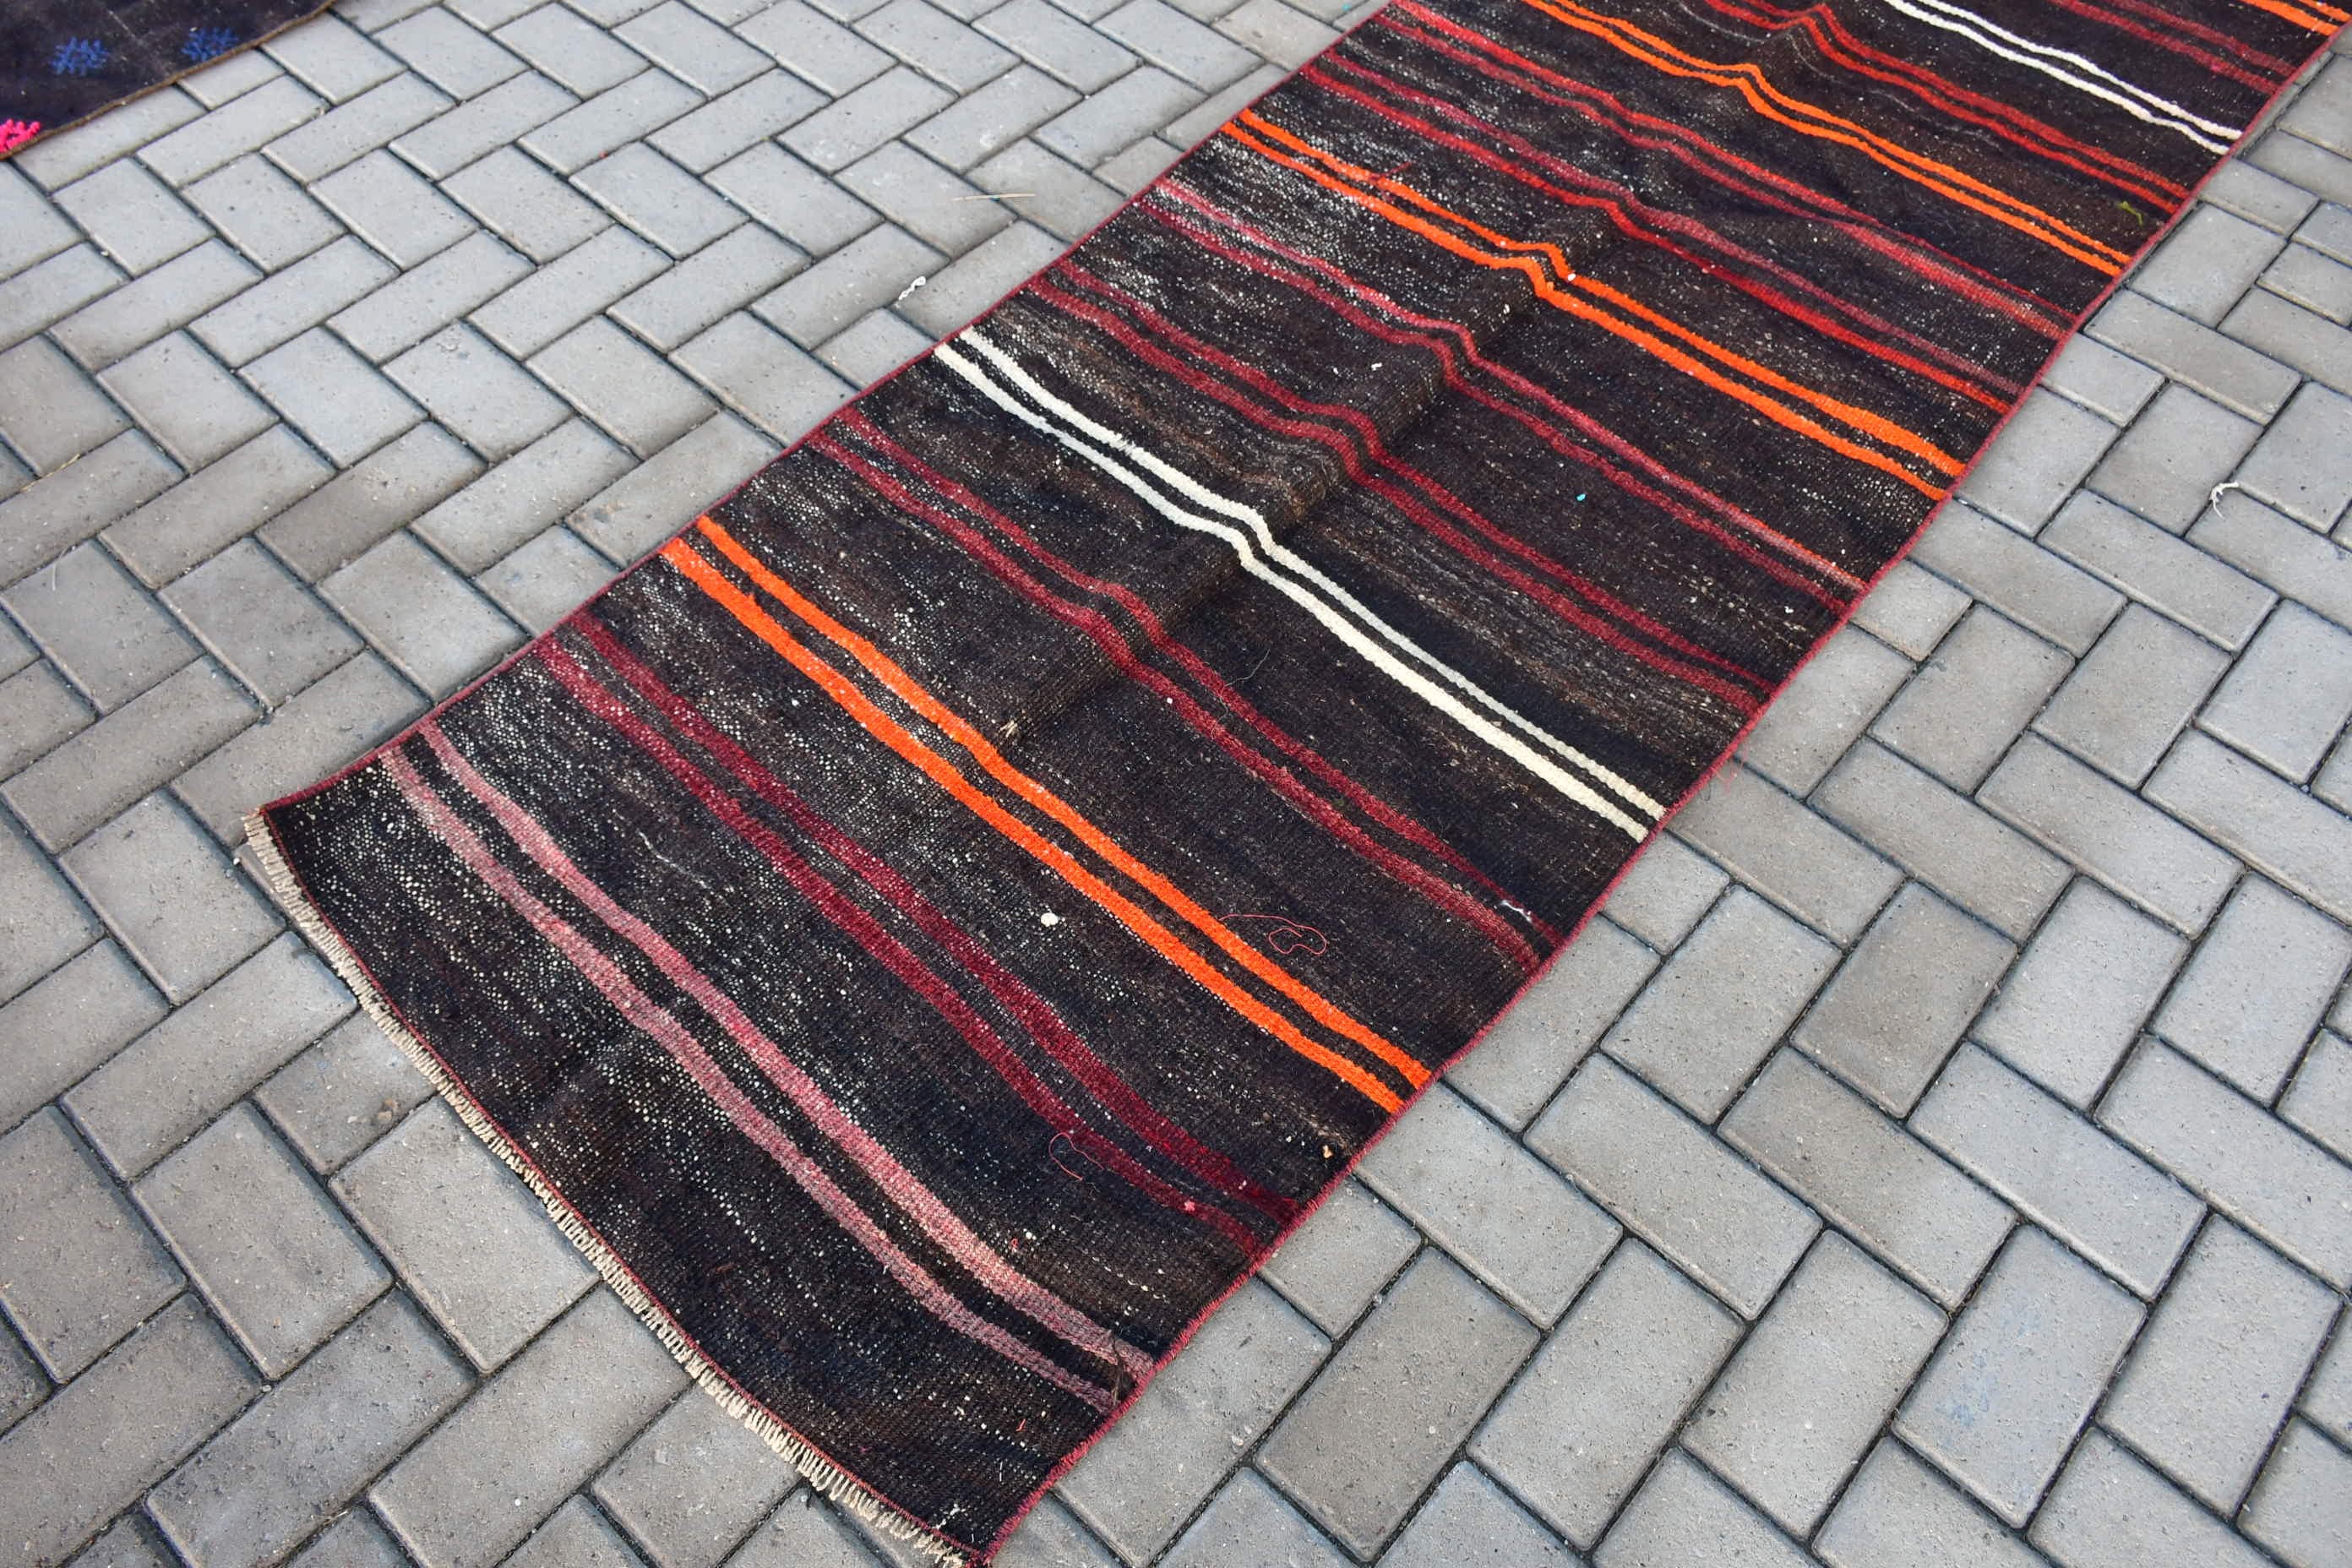 Turkish Rug, Floor Rugs, Kilim, 2.8x10.8 ft Runner Rugs, Art Rug, Stair Rug, Brown Moroccan Rug, Vintage Rug, Home Decor Rugs, Hallway Rugs